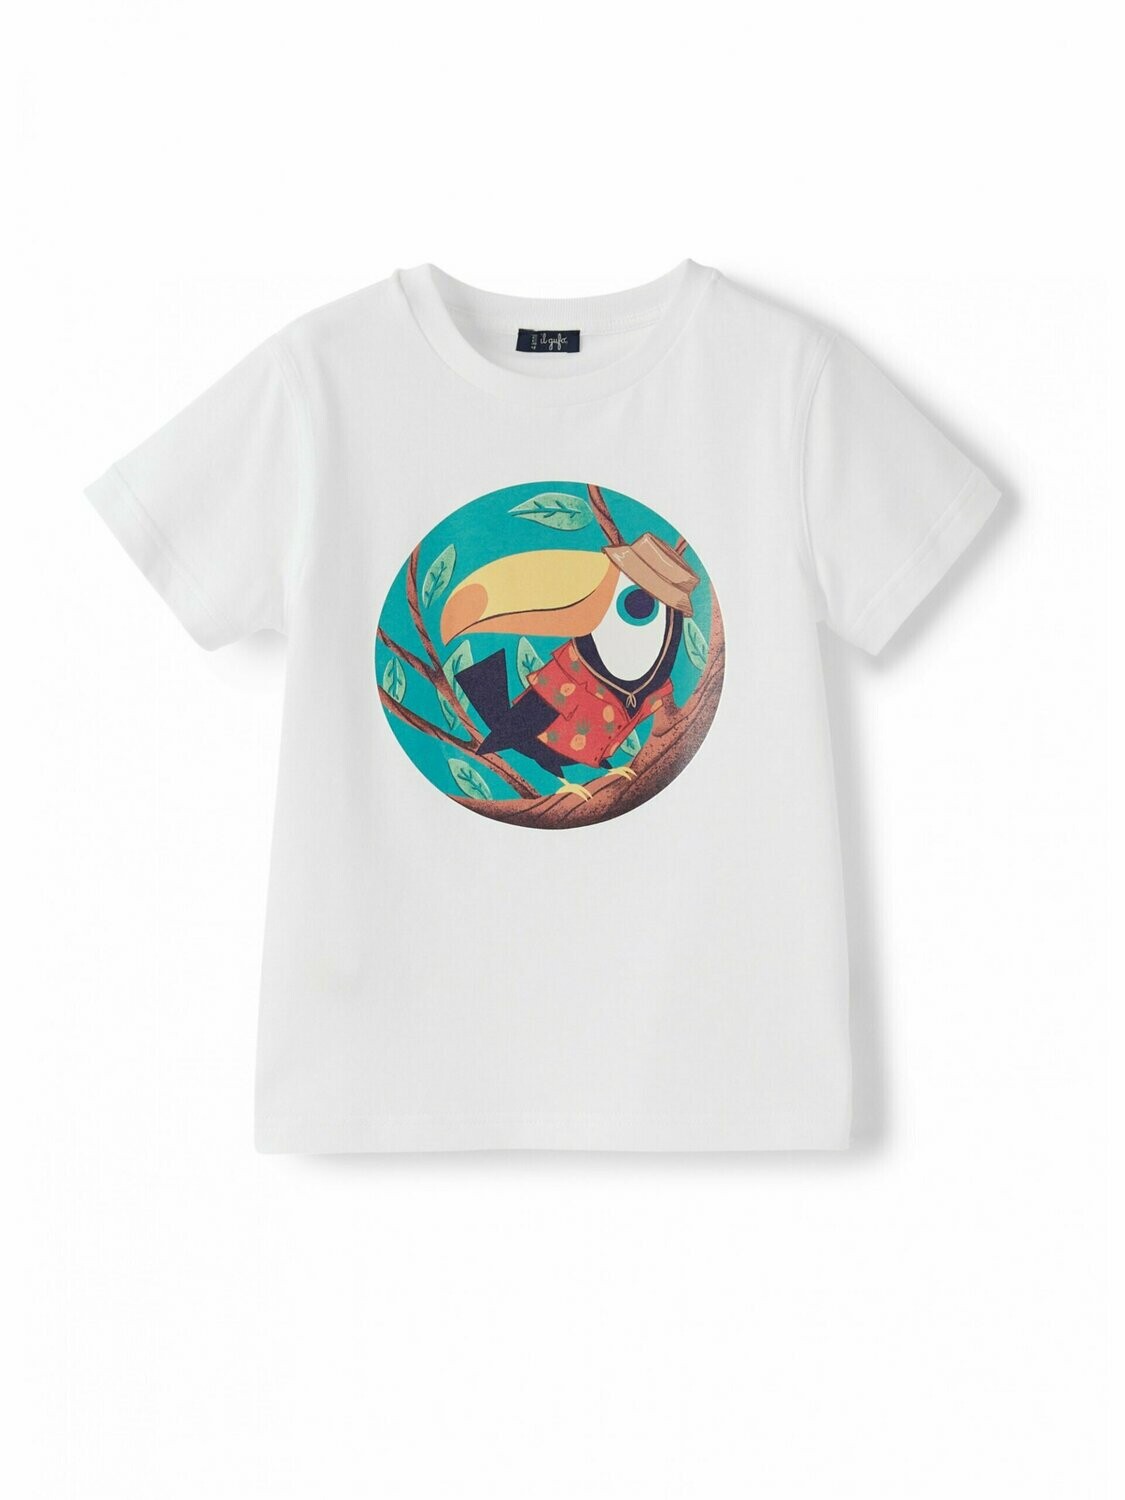 Il Gufo - T-shirt bianca stampa tucano, Size: 4 anni